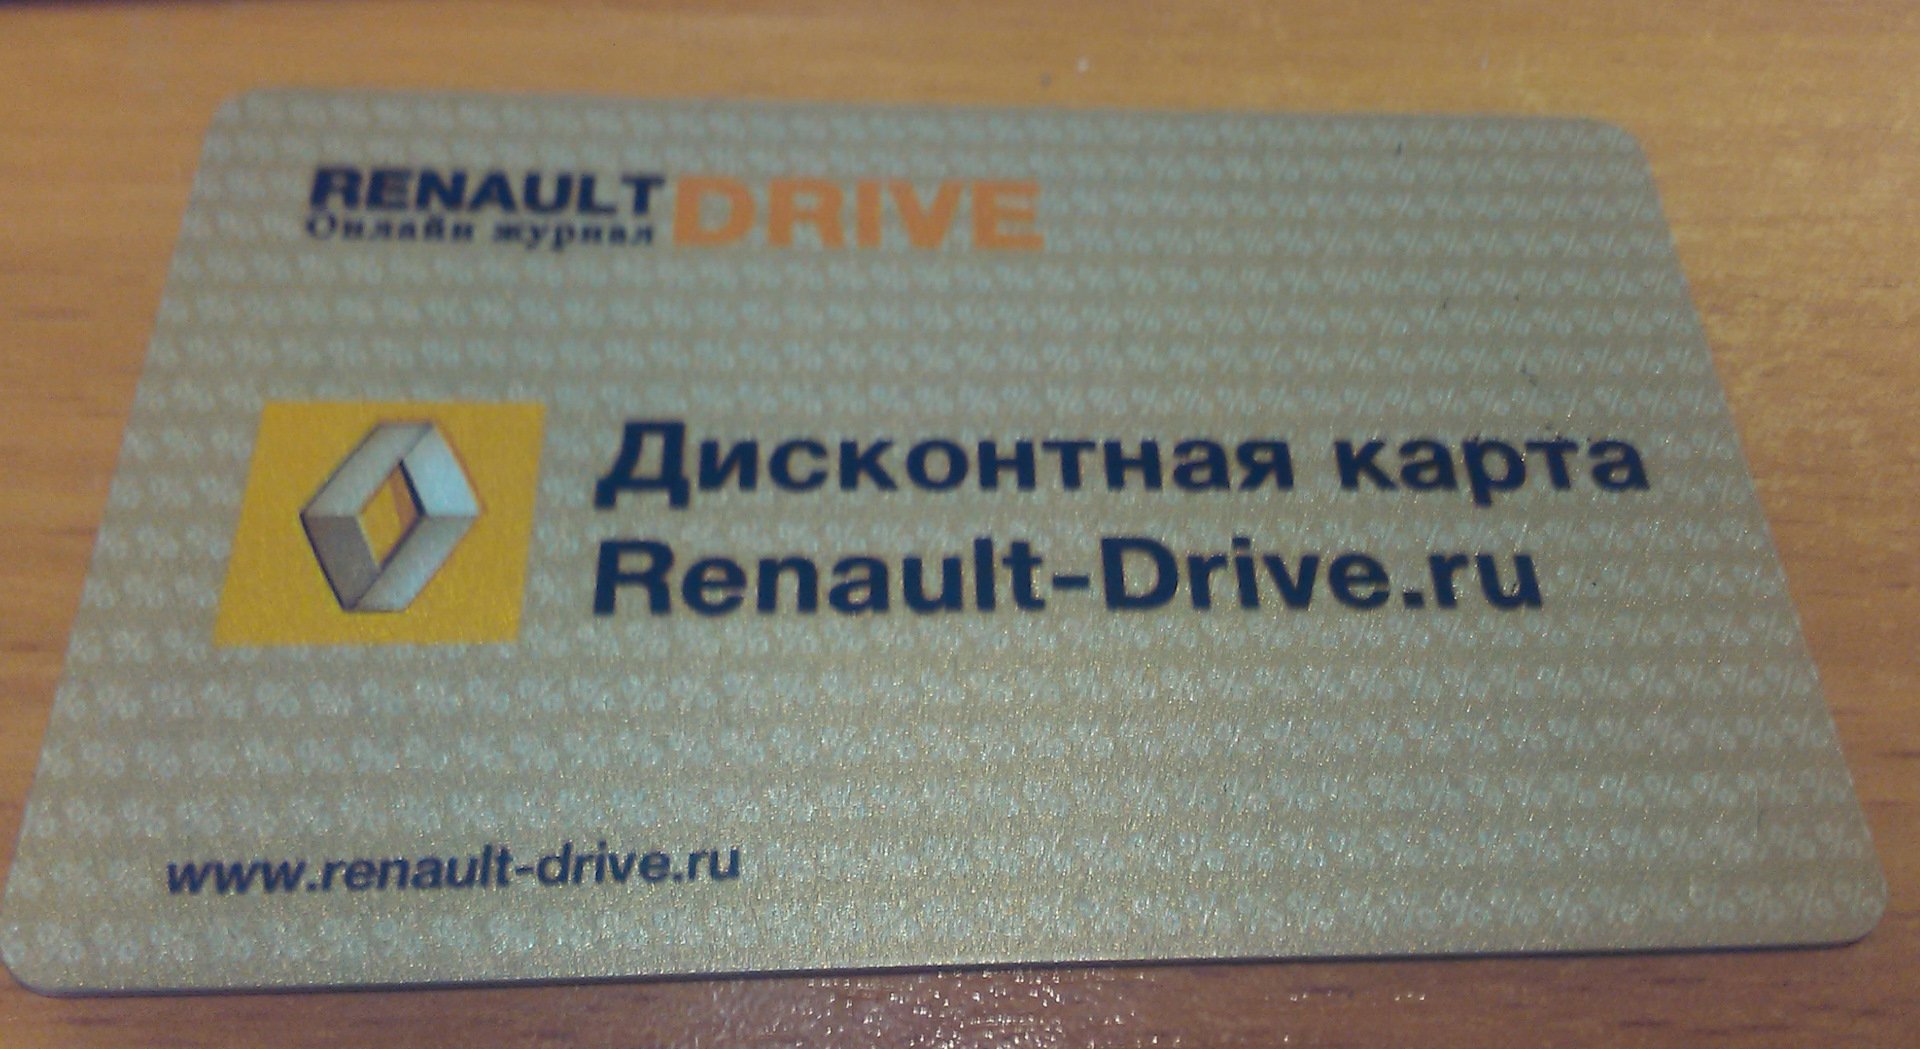 Рено драйвер. Дисконтная карта Renault-Drive. Клубная карта Рено. Скидочная карта Renault. Автодок дисконтная карта.